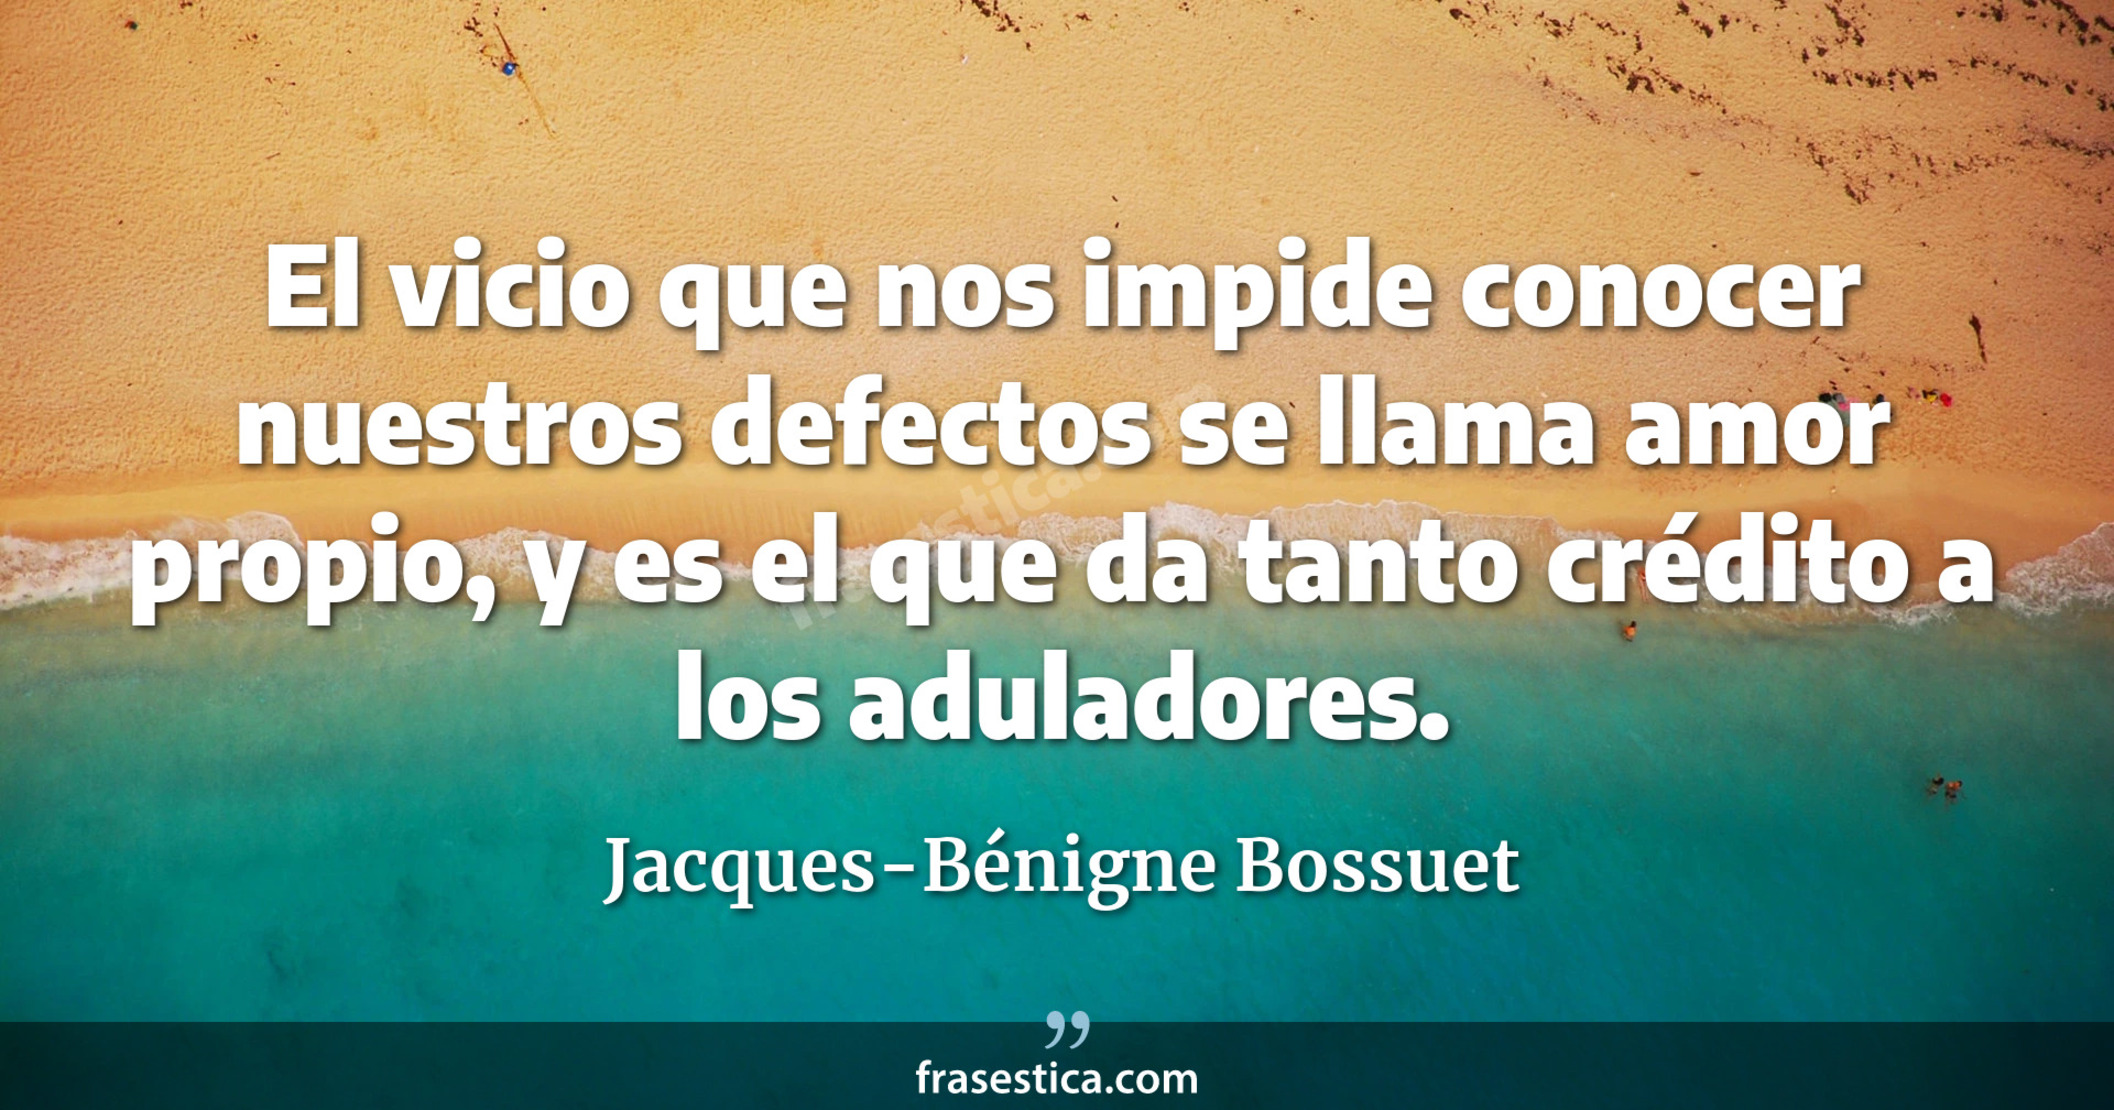 El vicio que nos impide conocer nuestros defectos se llama amor propio, y es el que da tanto crédito a los aduladores. - Jacques-Bénigne Bossuet